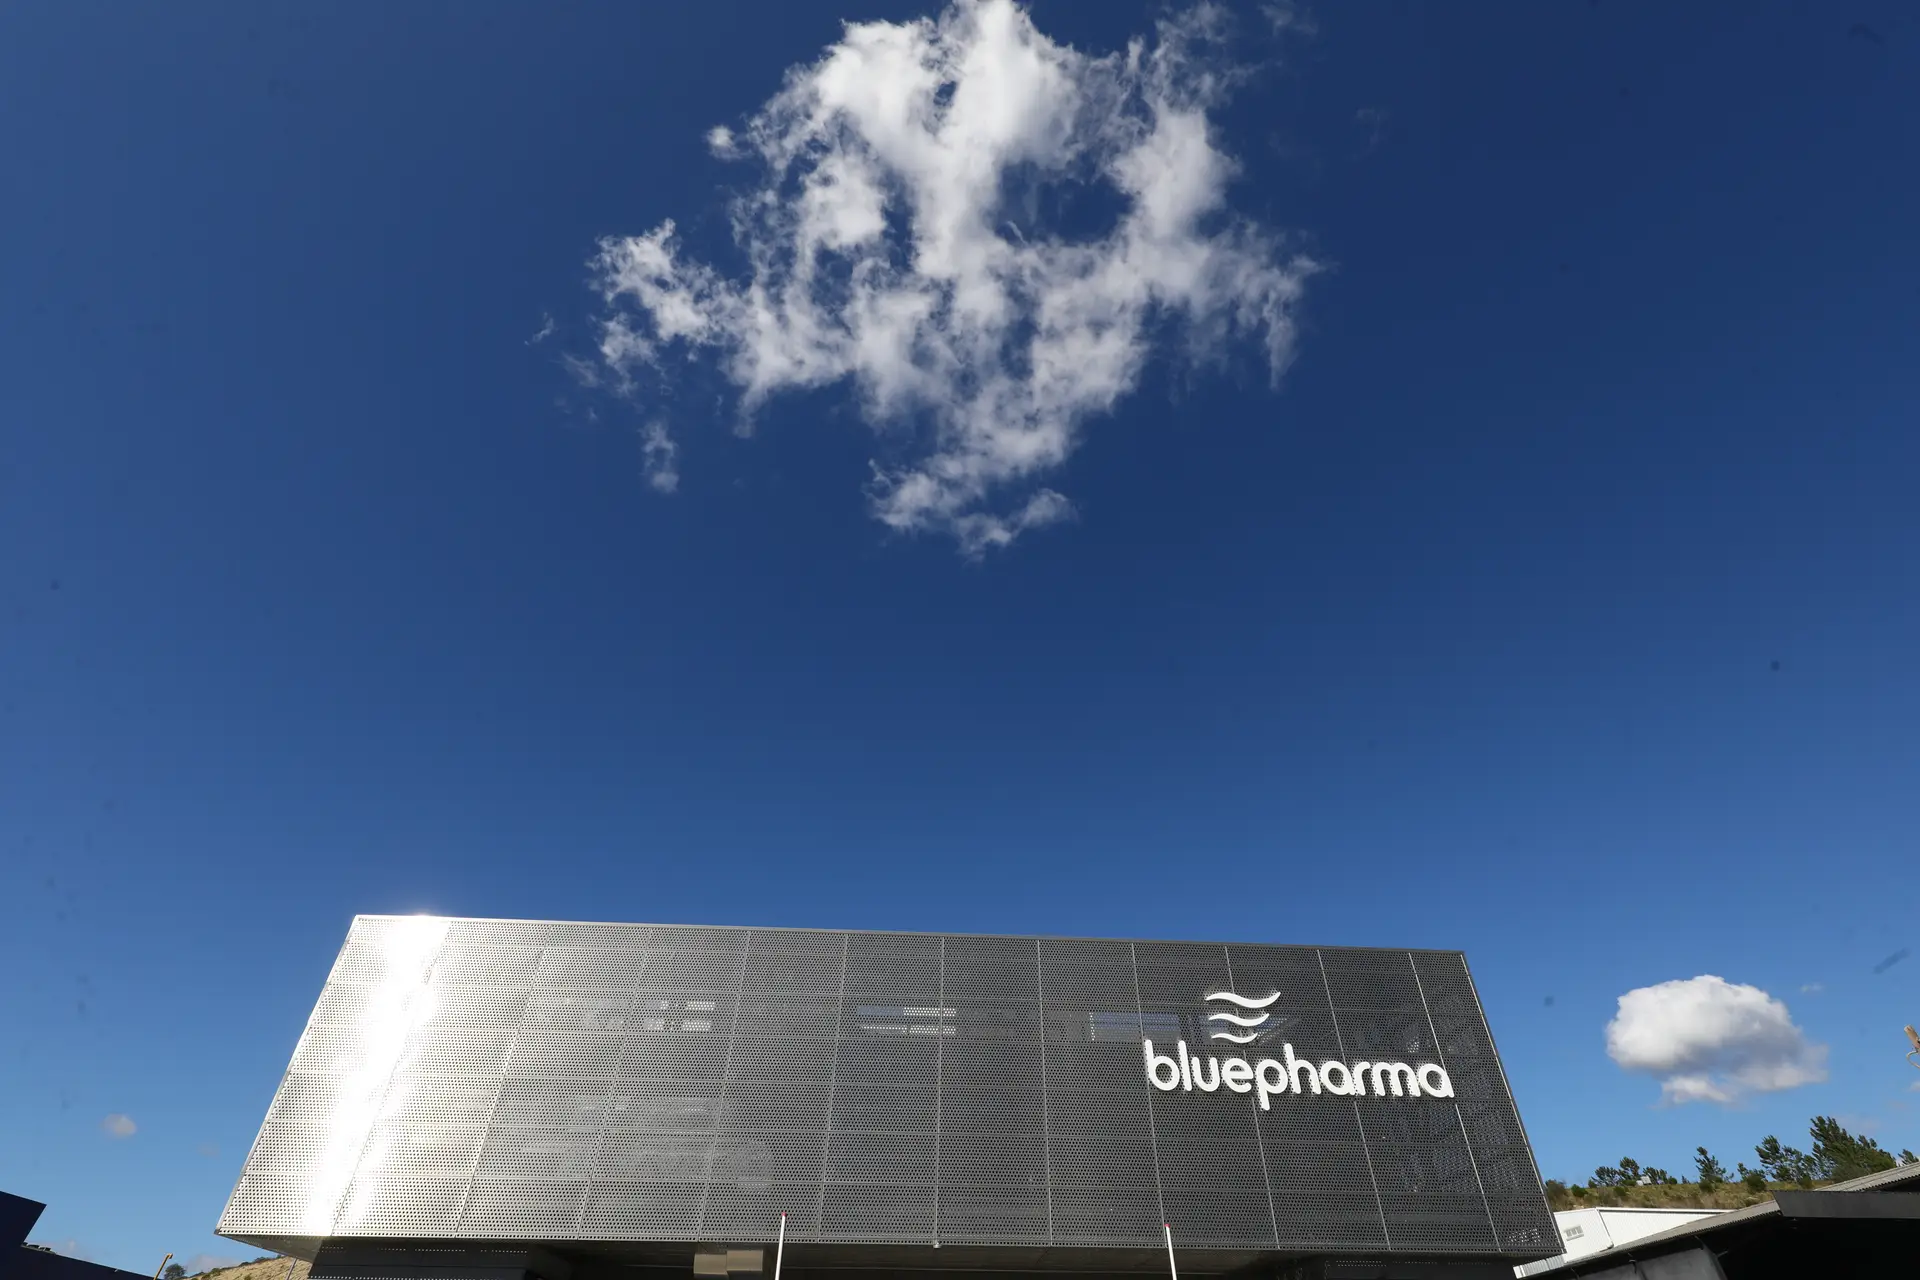 Bluepharma inaugura fábrica em Coimbra onde investiu 30 milhões de euros